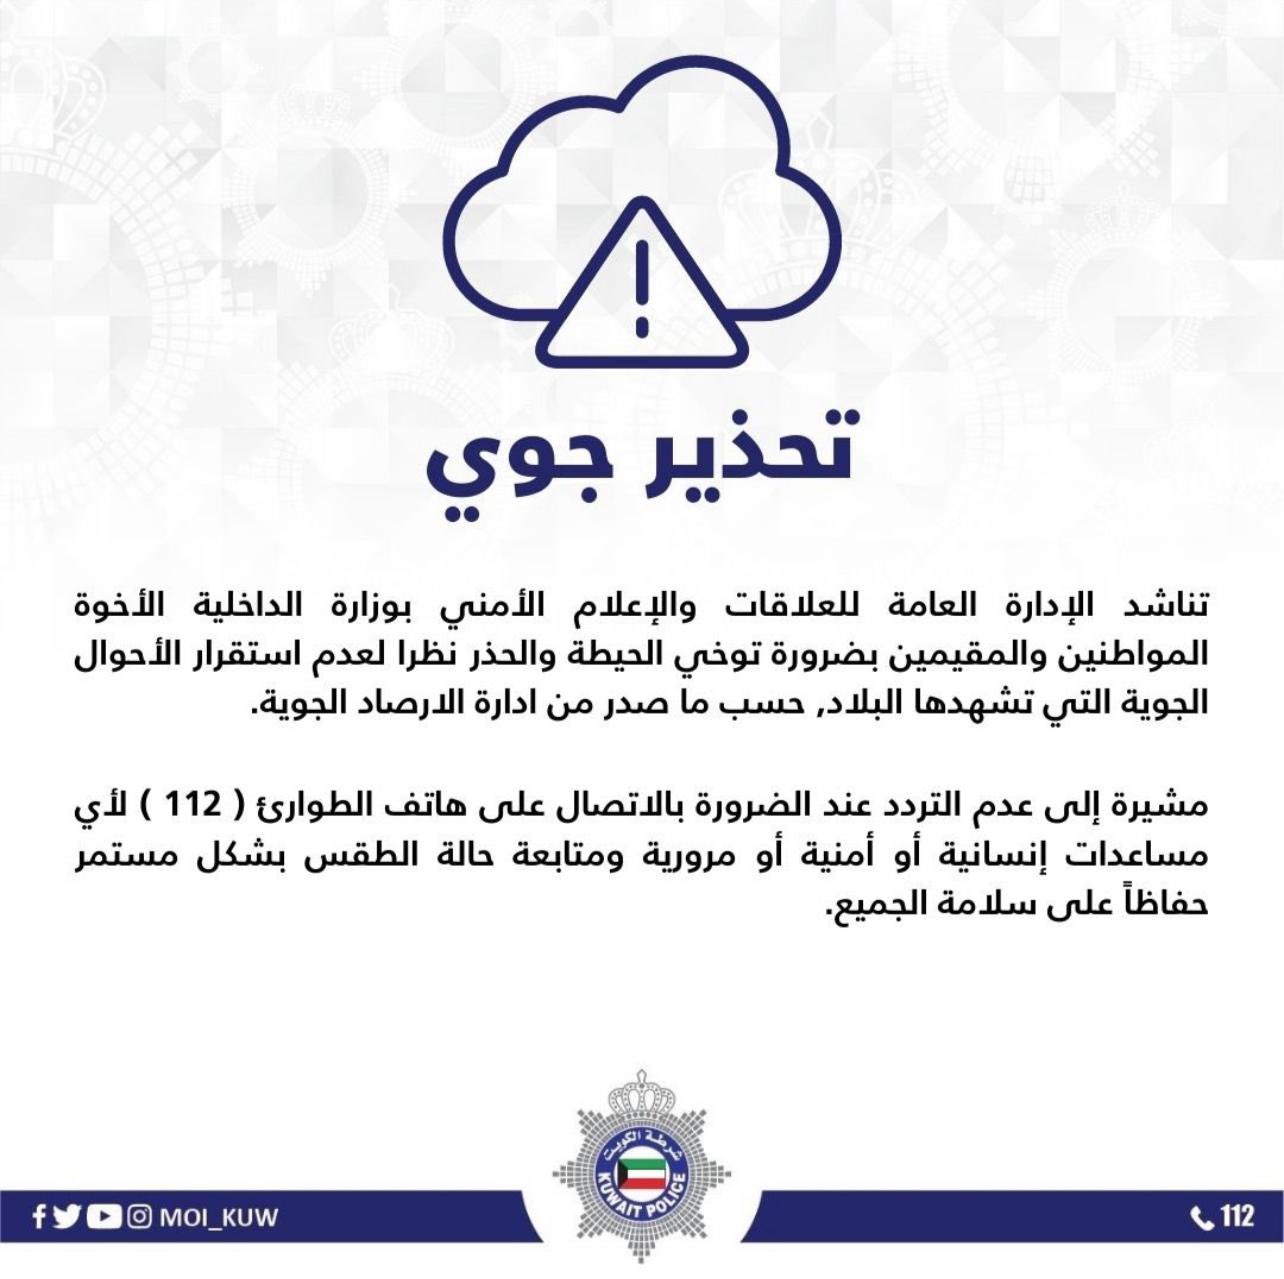 Kuwait Weather Warning Emergency Number